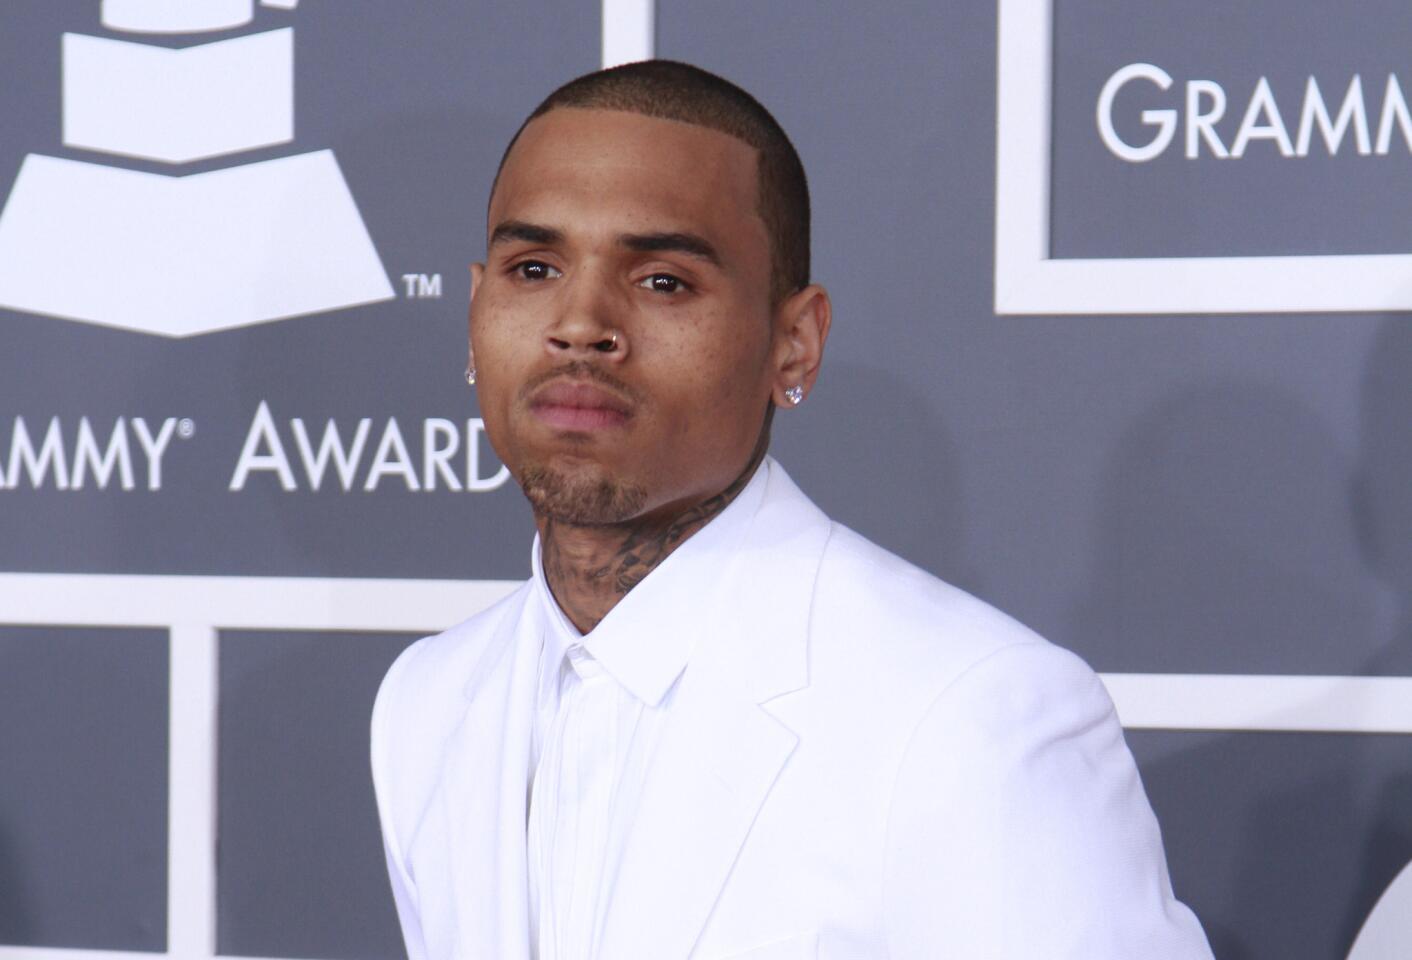 Singer Chris Brown, 2009